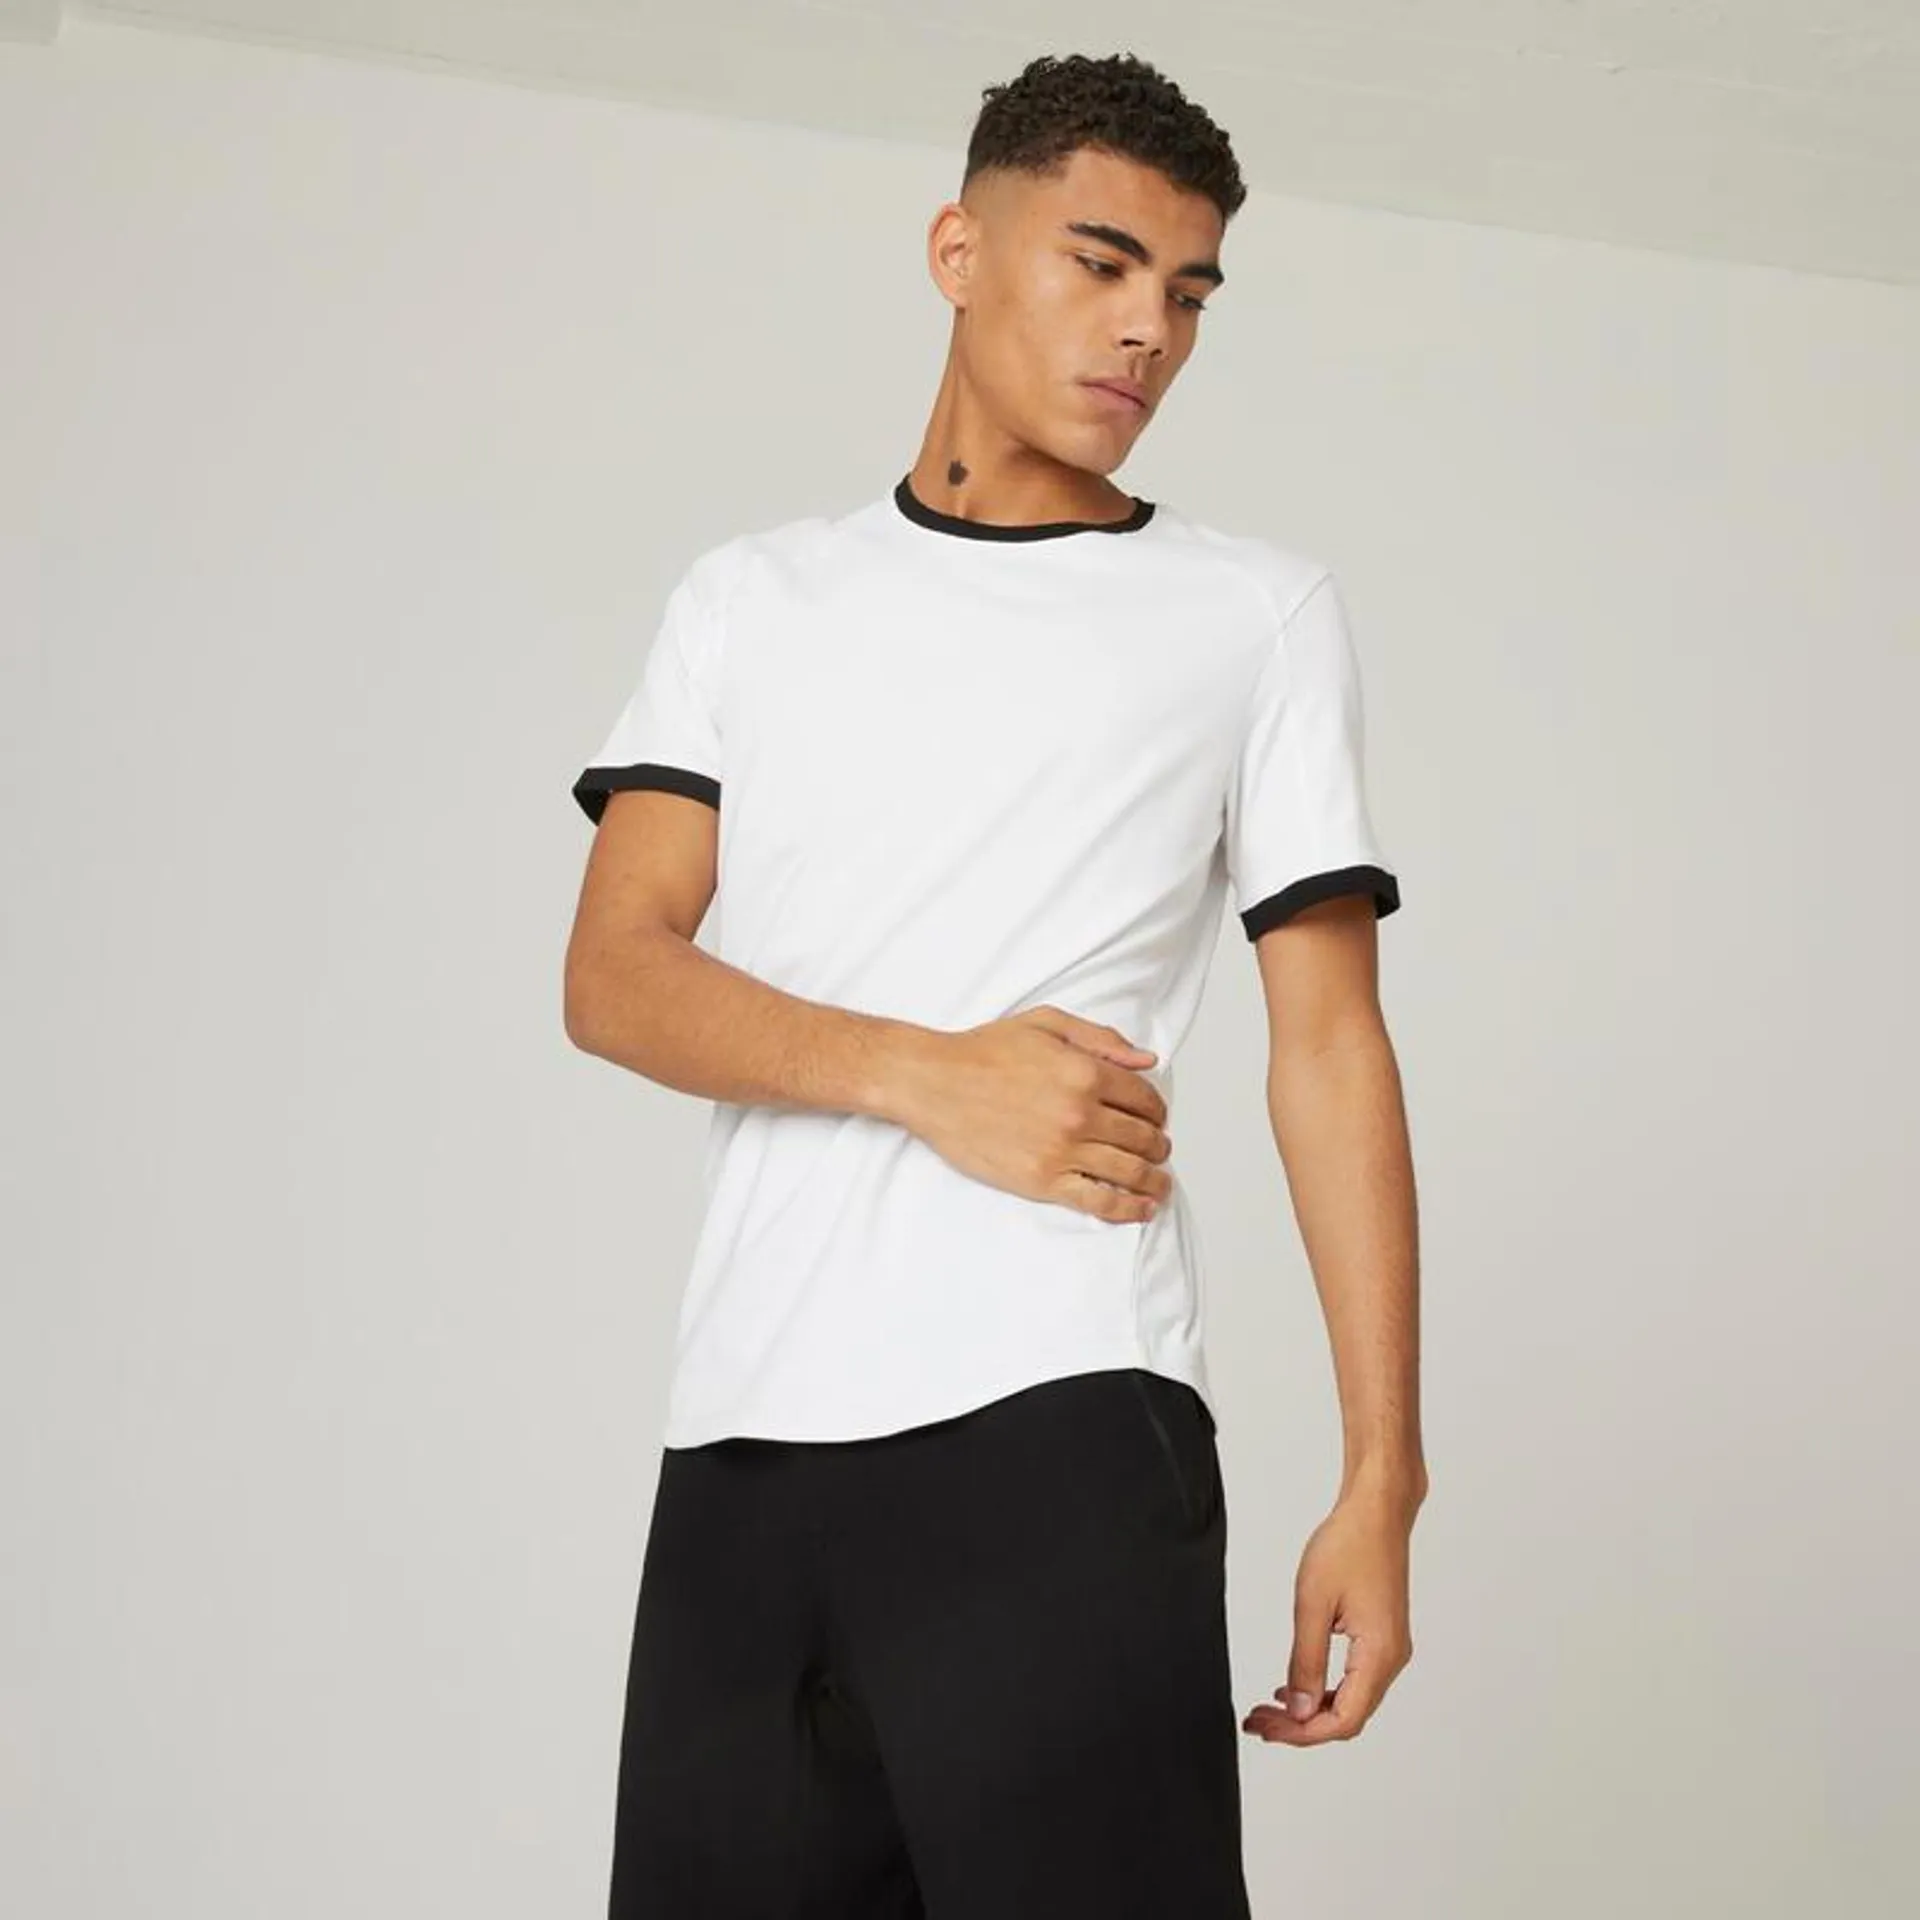 T-shirt fitness manches courtes slim coton col rond homme blanc glacier / noir